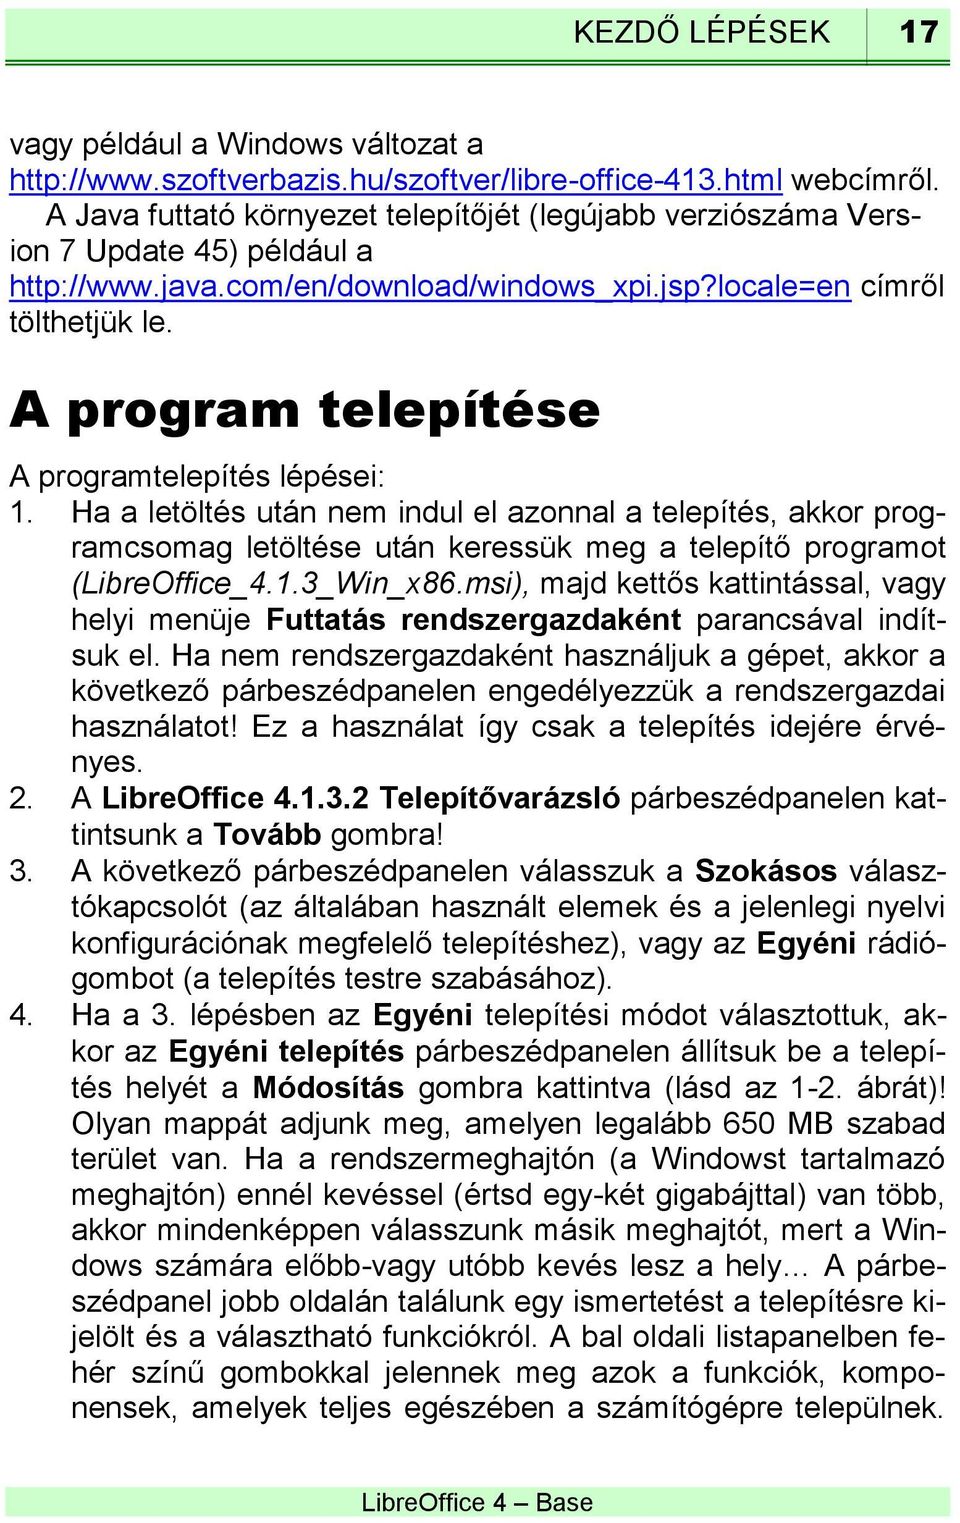 A program telepítése A programtelepítés lépései: 1. Ha a letöltés után nem indul el azonnal a telepítés, akkor programcsomag letöltése után keressük meg a telepítő programot (LibreOffice_4.1.3_Win_x86.